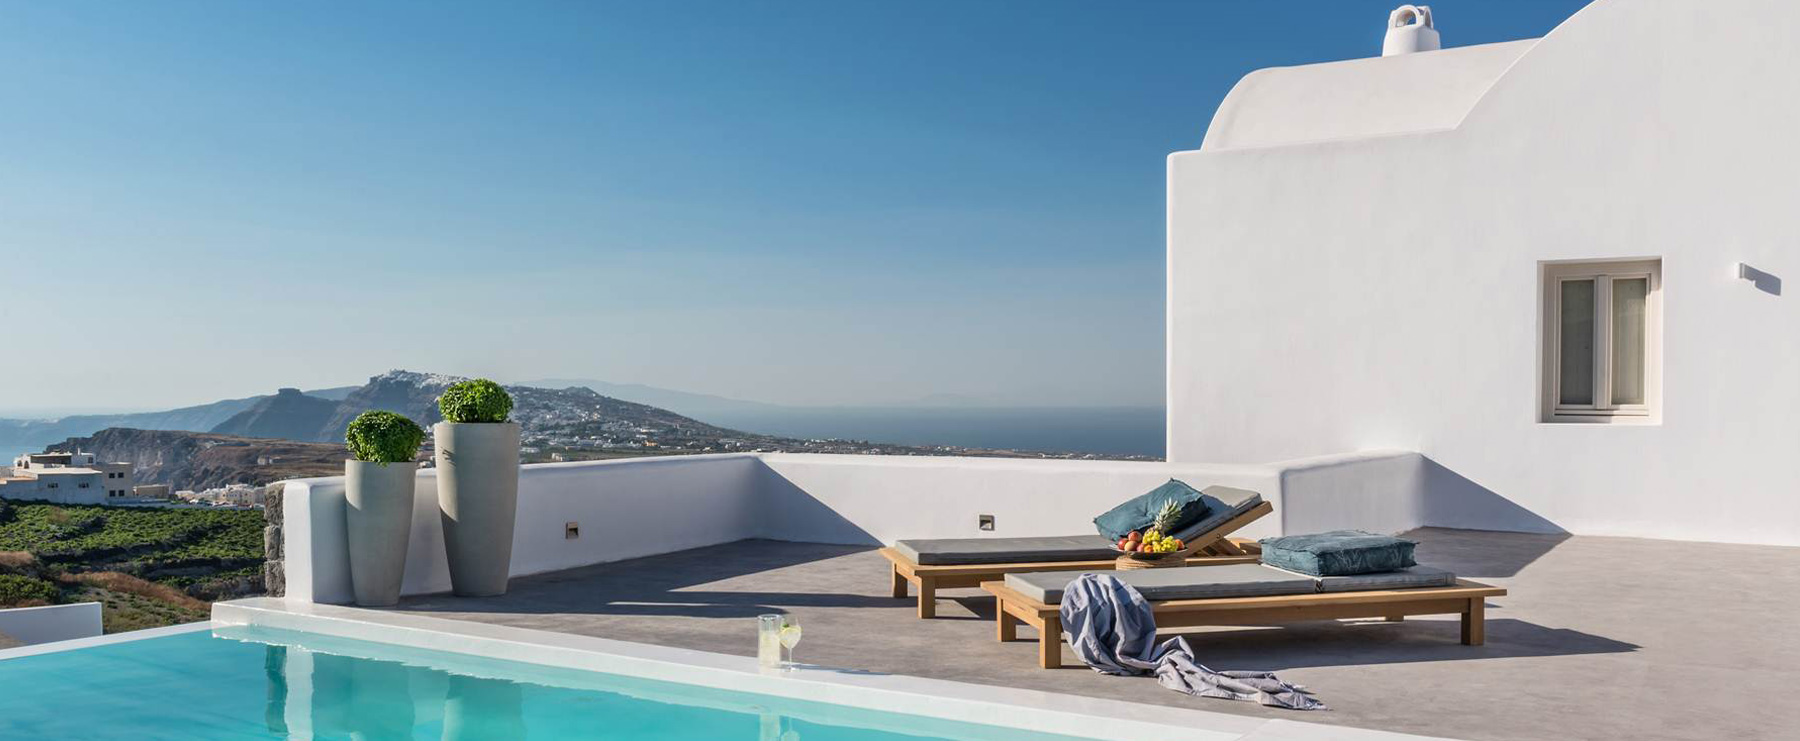 santorini luxury villas caldera views